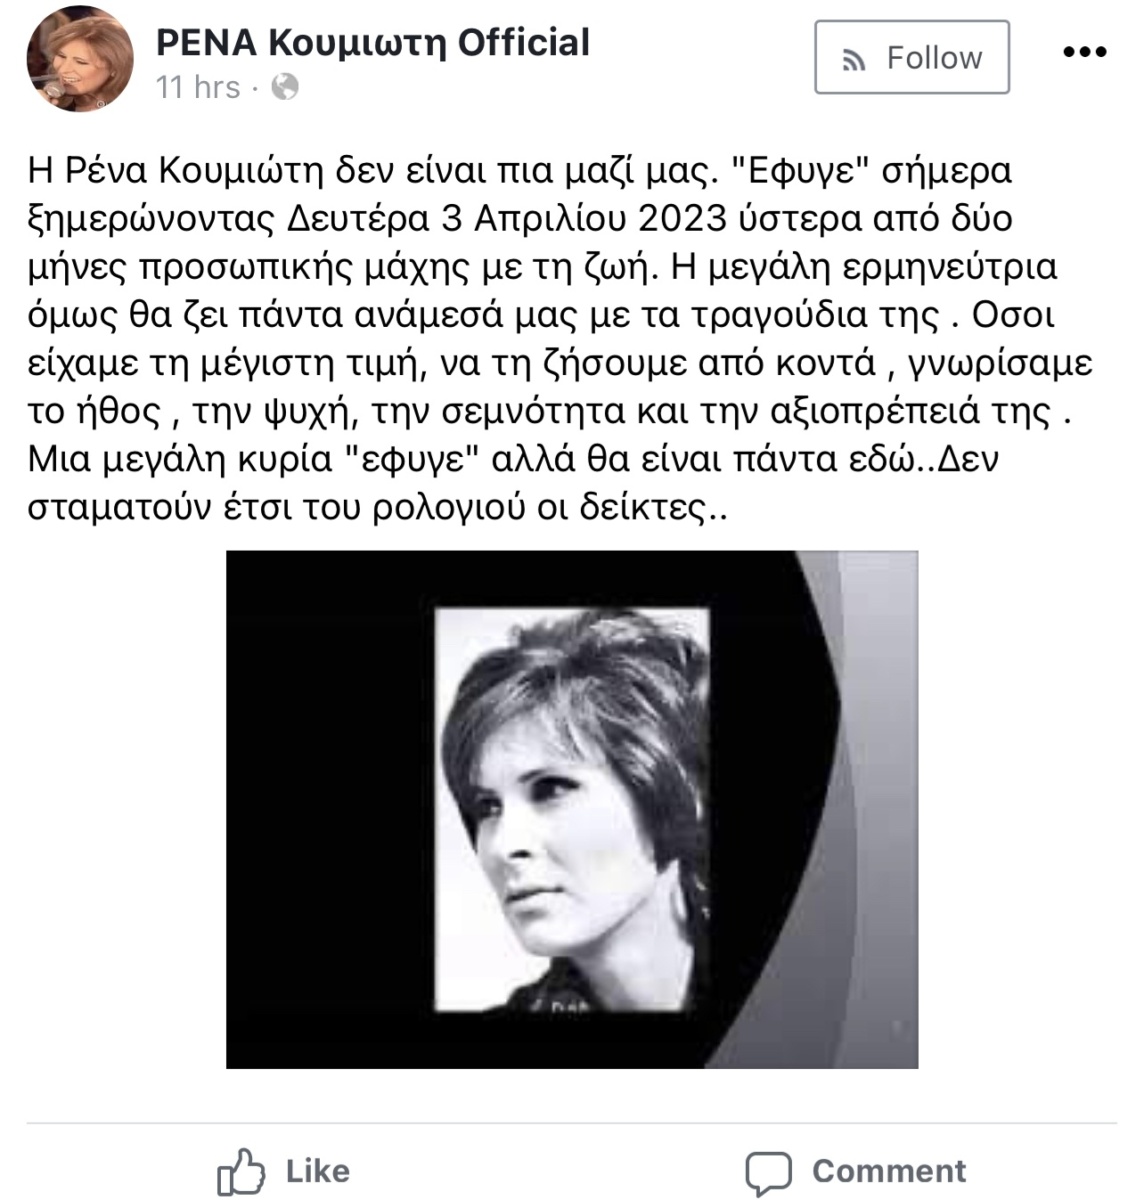 Η Ρένα Κουμιώτη, Ελληνίδα τραγουδίστρια του «Νέου Κύματος», πέθανε σε ηλικία 81 ετών